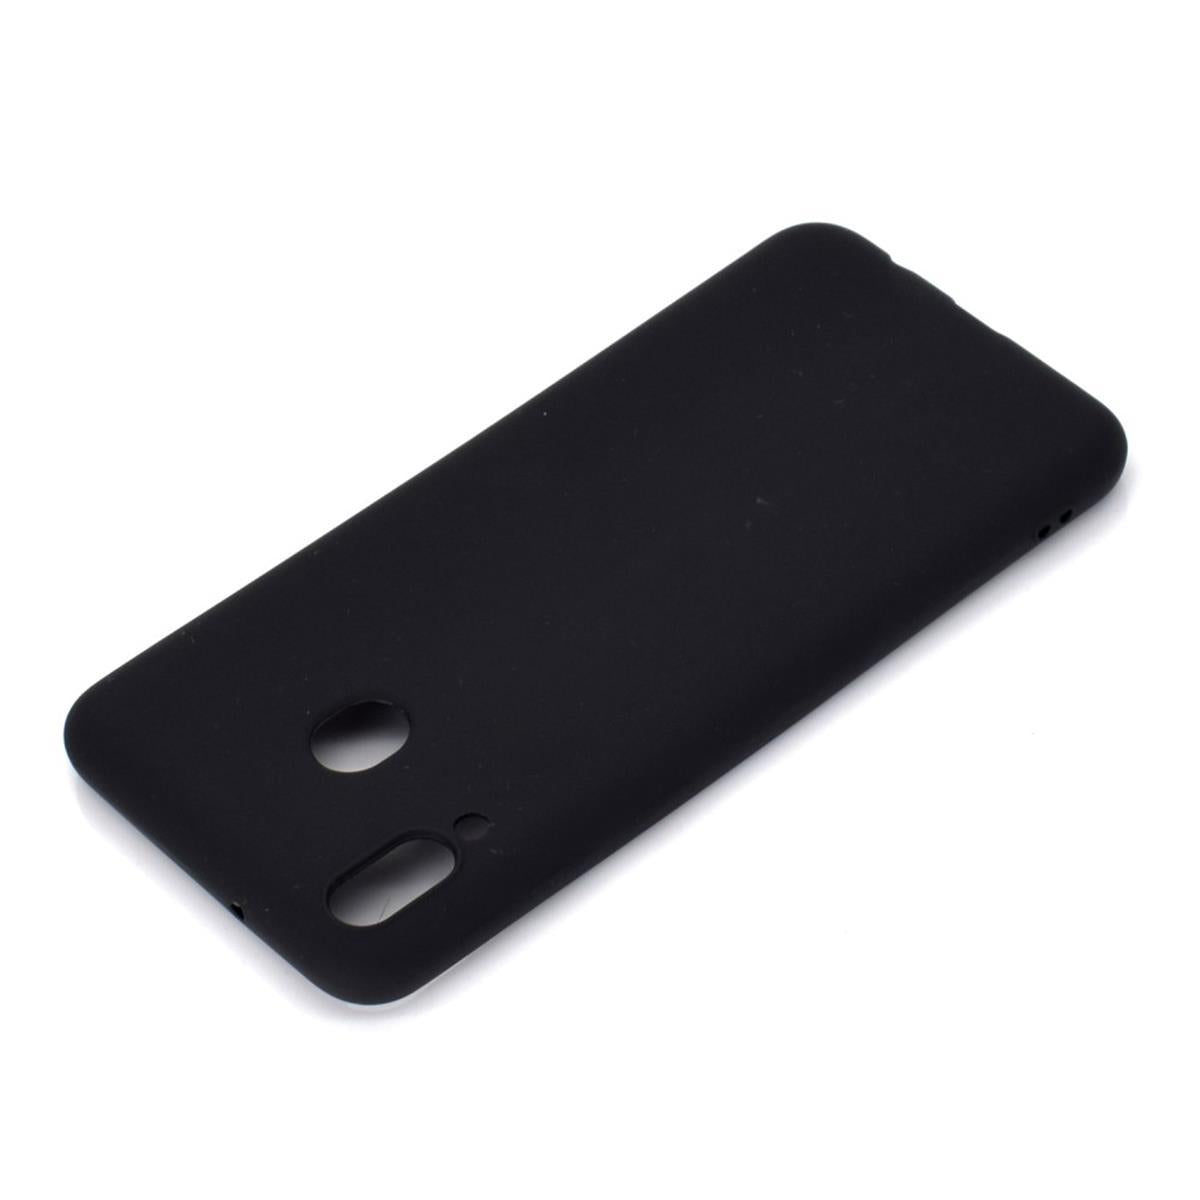 Hülle für Samsung Galaxy M20 Handyhülle Silikon Case Cover Bumper matt Schwarz